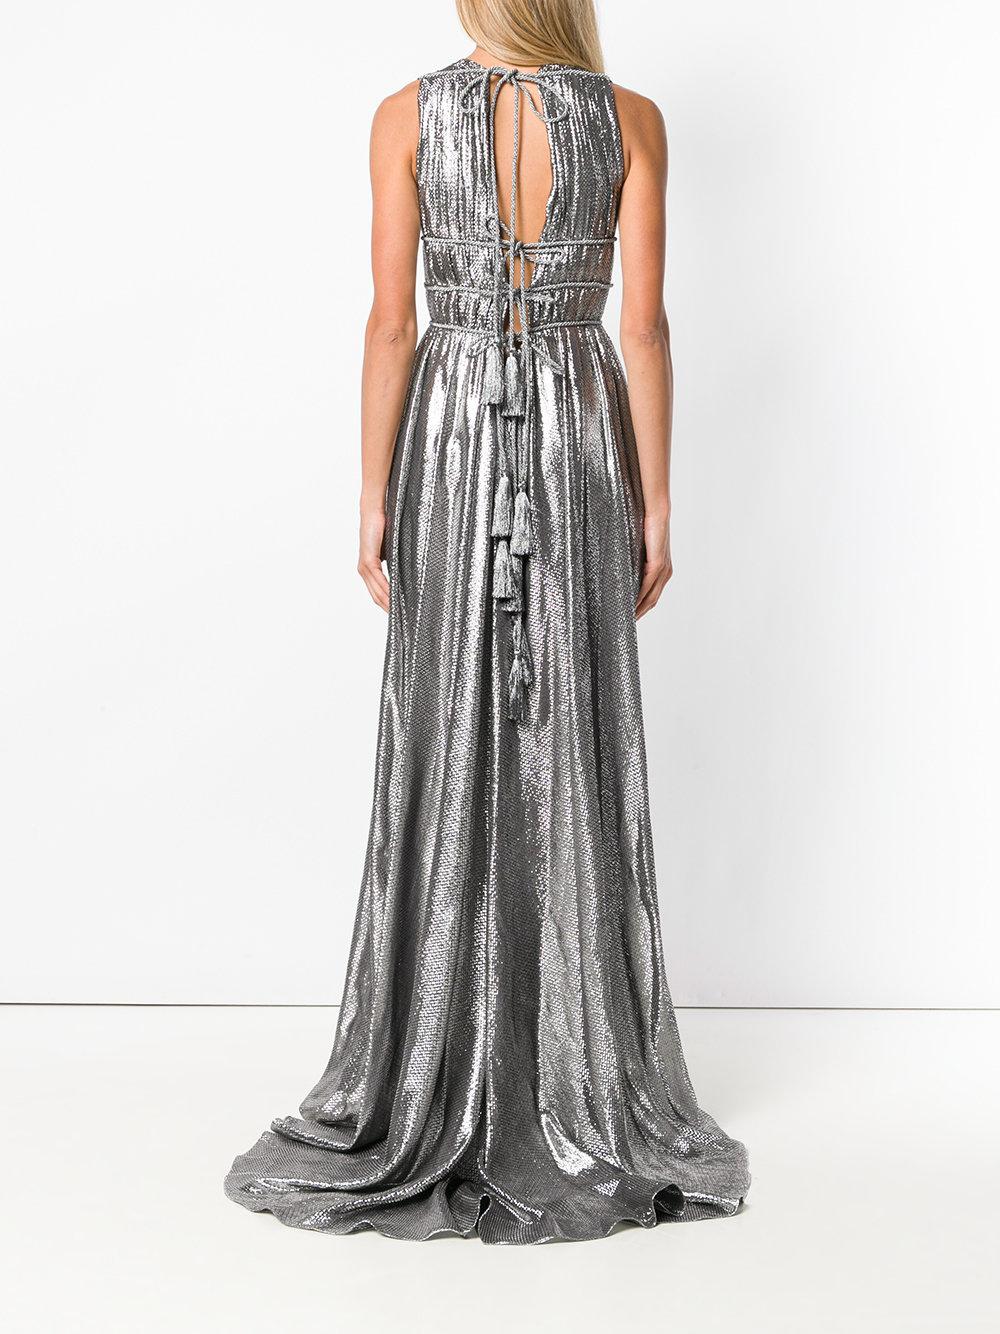 Alberta Ferretti Metallic Grecian Dress | Lyst